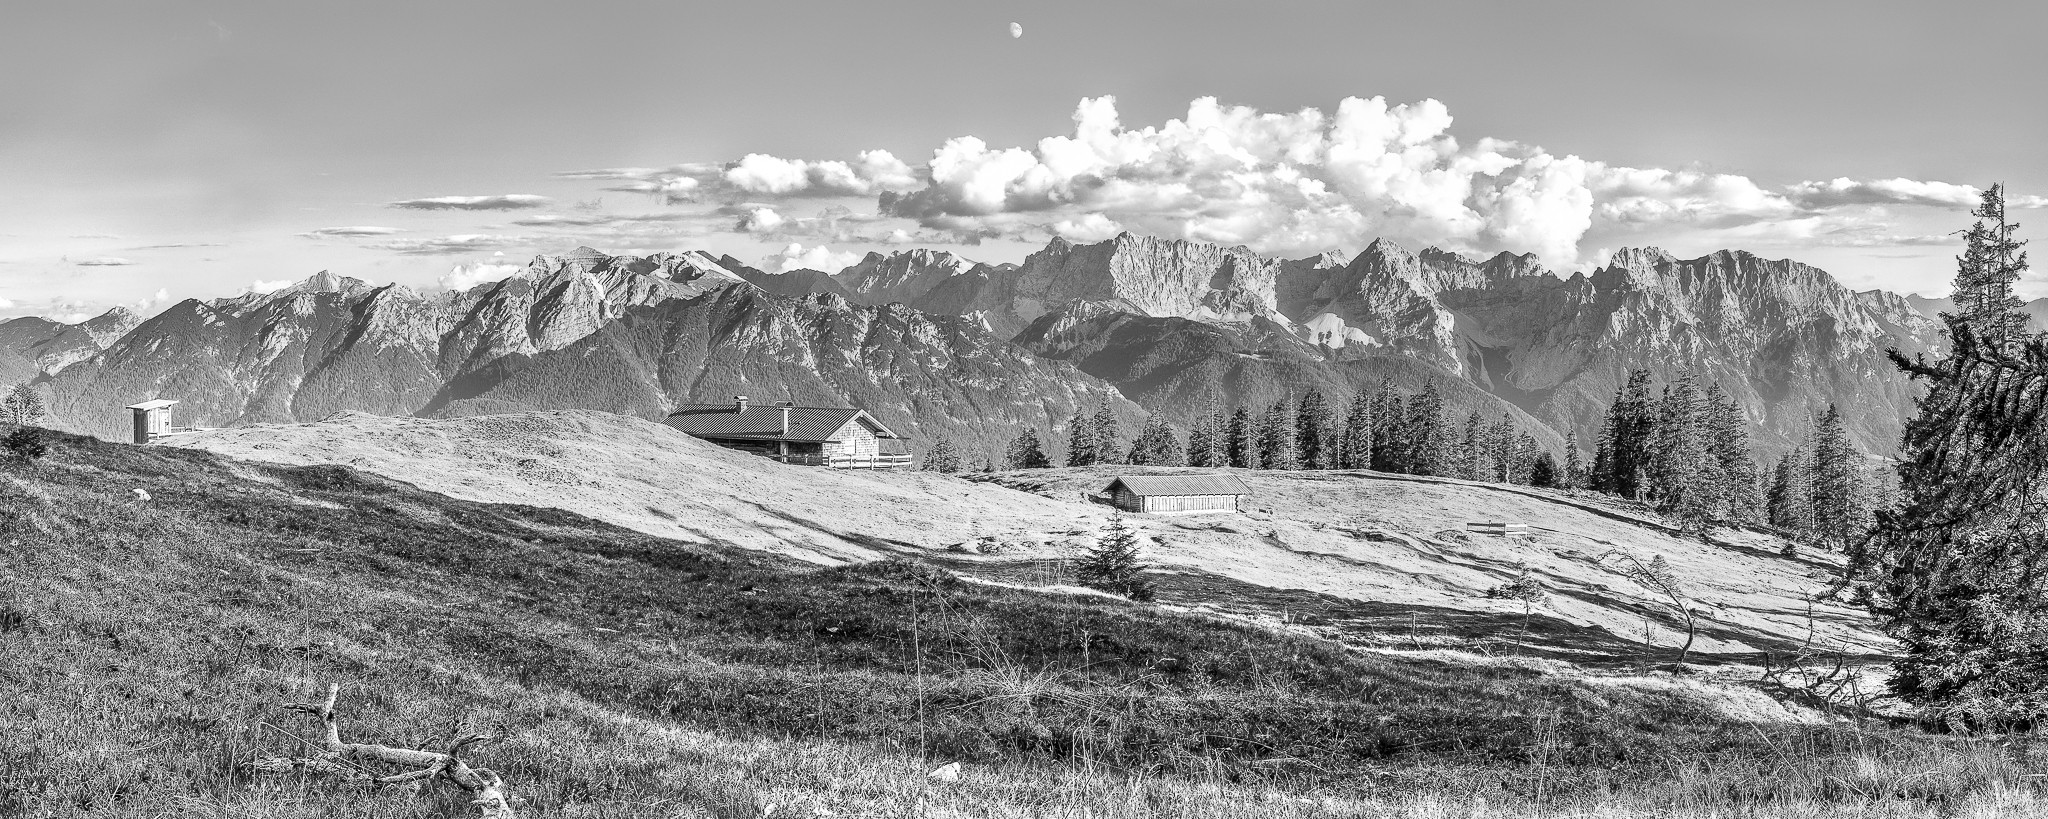 Panorama Ausblick von der Krüner Alm auf die Soierngruppe und das Karwendelgebirge. Die Schatten der Bäume auf der Almwiese geben dem Schwarz-Weiß-Bild einen interessanten Kontrast.